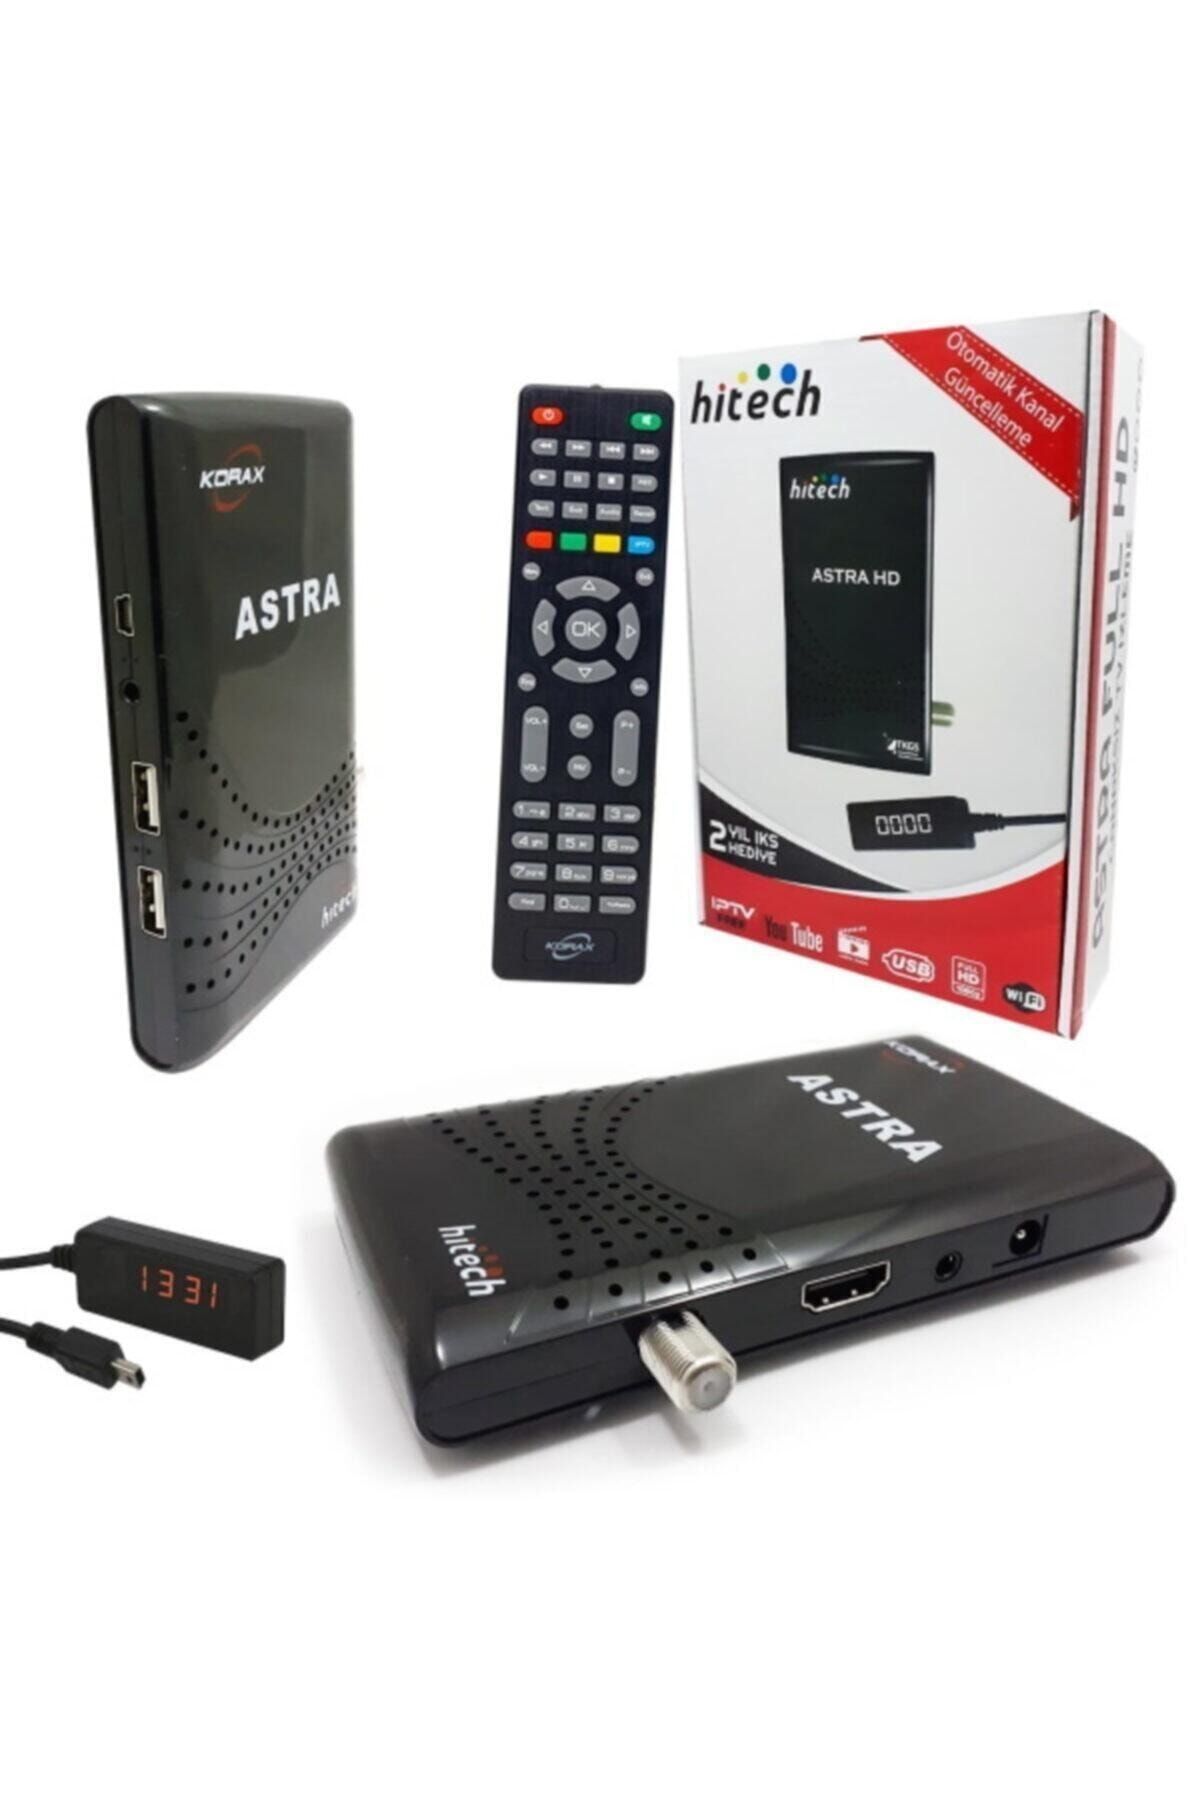 HiTech Mini Hd Uydu Alıcısı Tv Wifi Astra-hd Sunplus